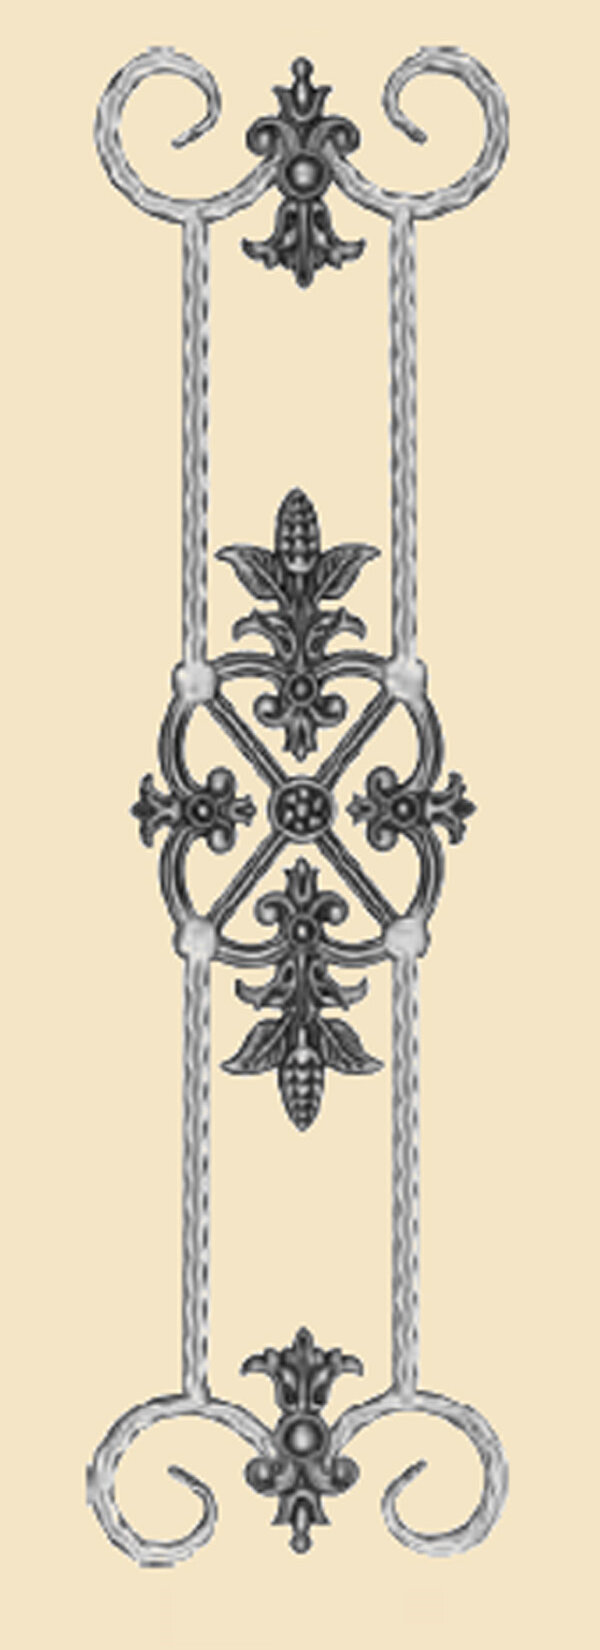 objet de decoration portails et garde corps 1279